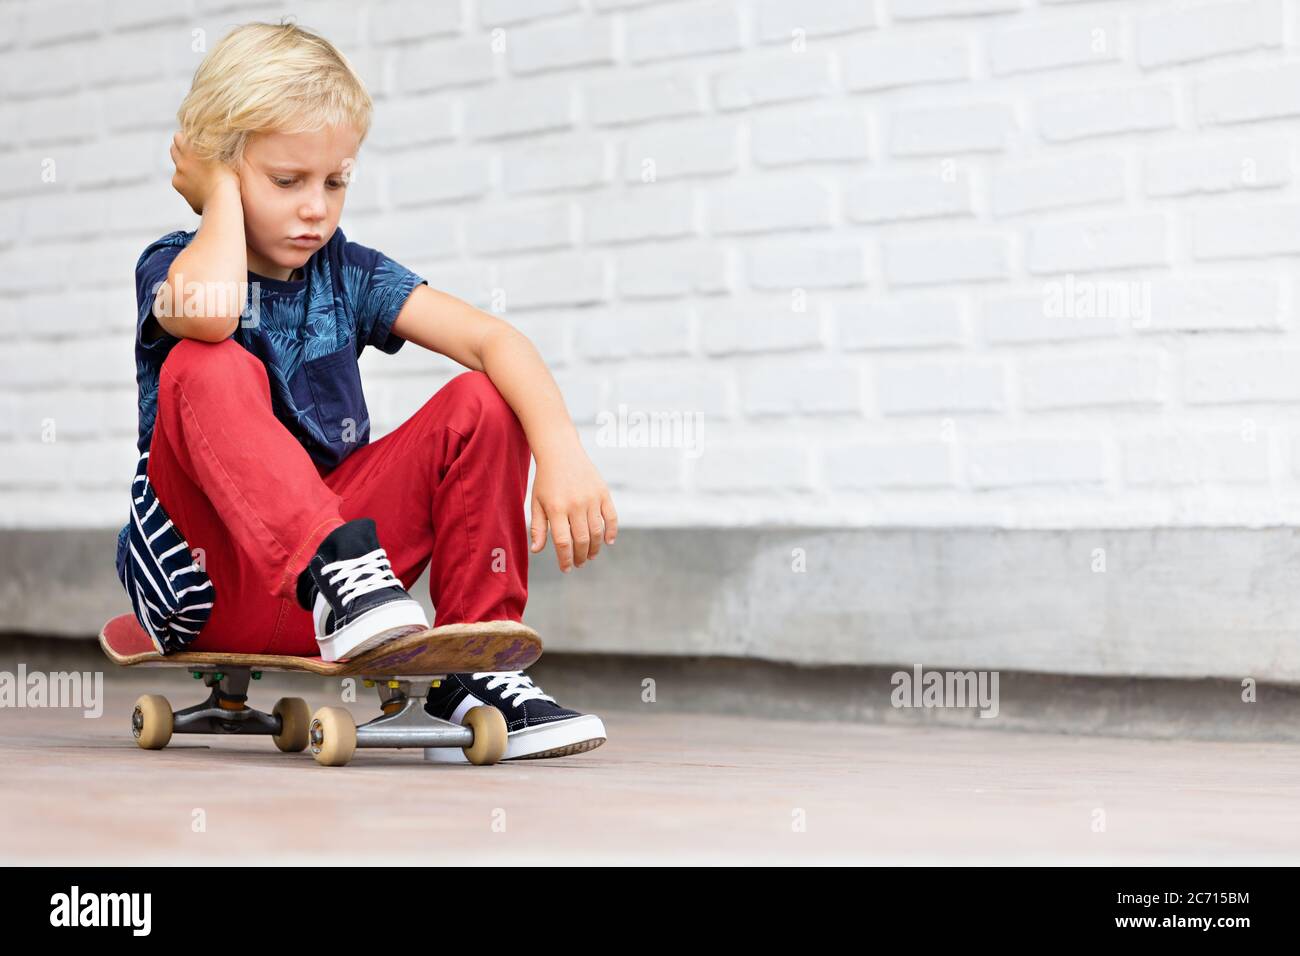 Le patineur qui a l'air malheureux et contrarié s'assoit sur le skateboard avant que les enfants s'entraîne dans le parc de skate. Vie familiale active, activités de loisirs en plein air Banque D'Images